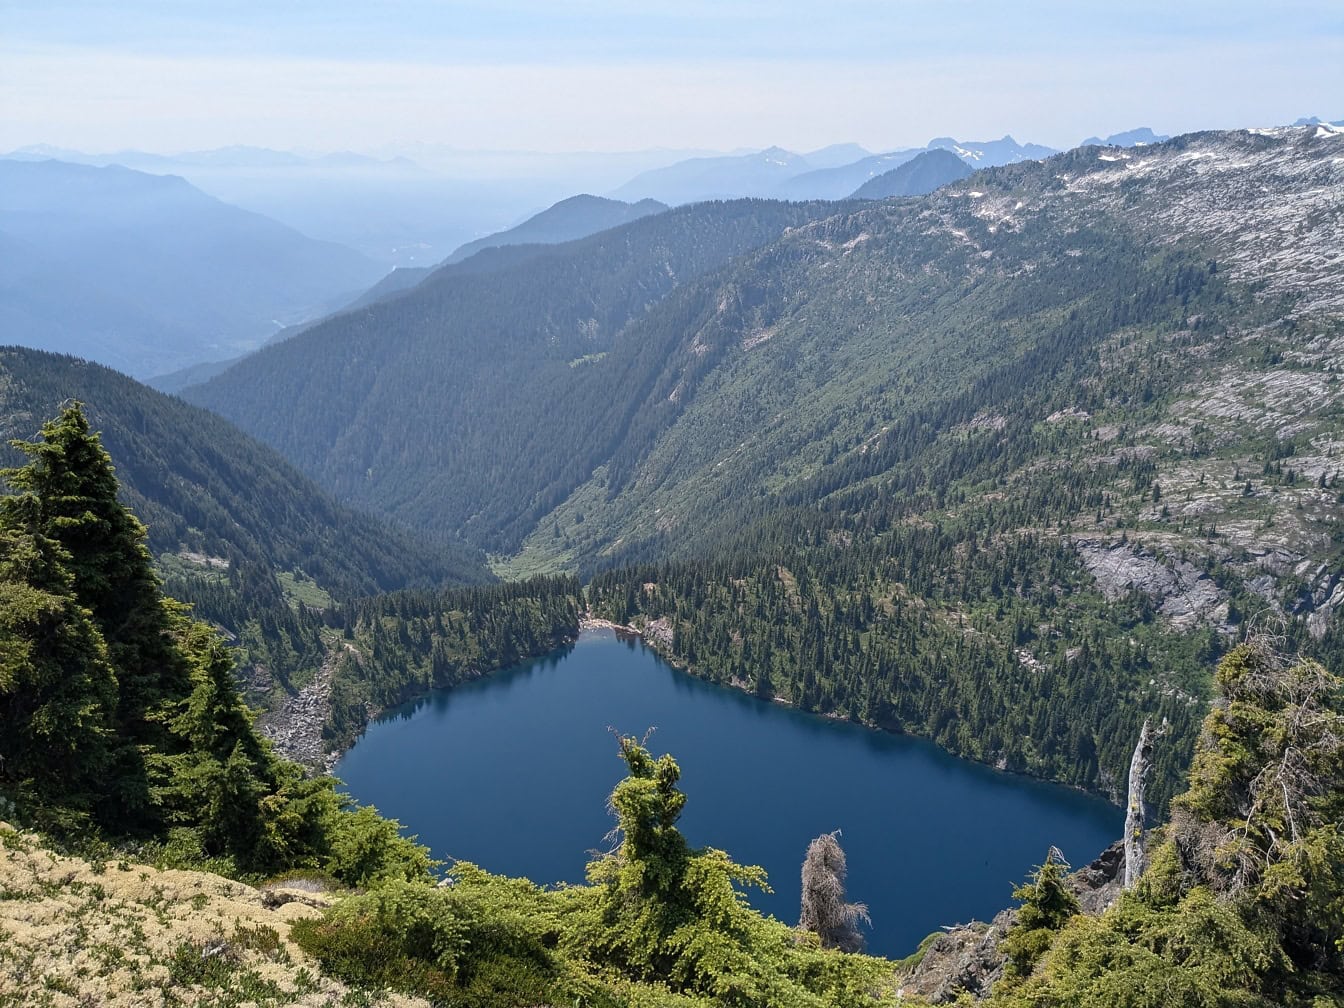 Prekrasna obala jezera Thornton s planinama u pozadini u nacionalnom parku North Cascades u Washingtonu